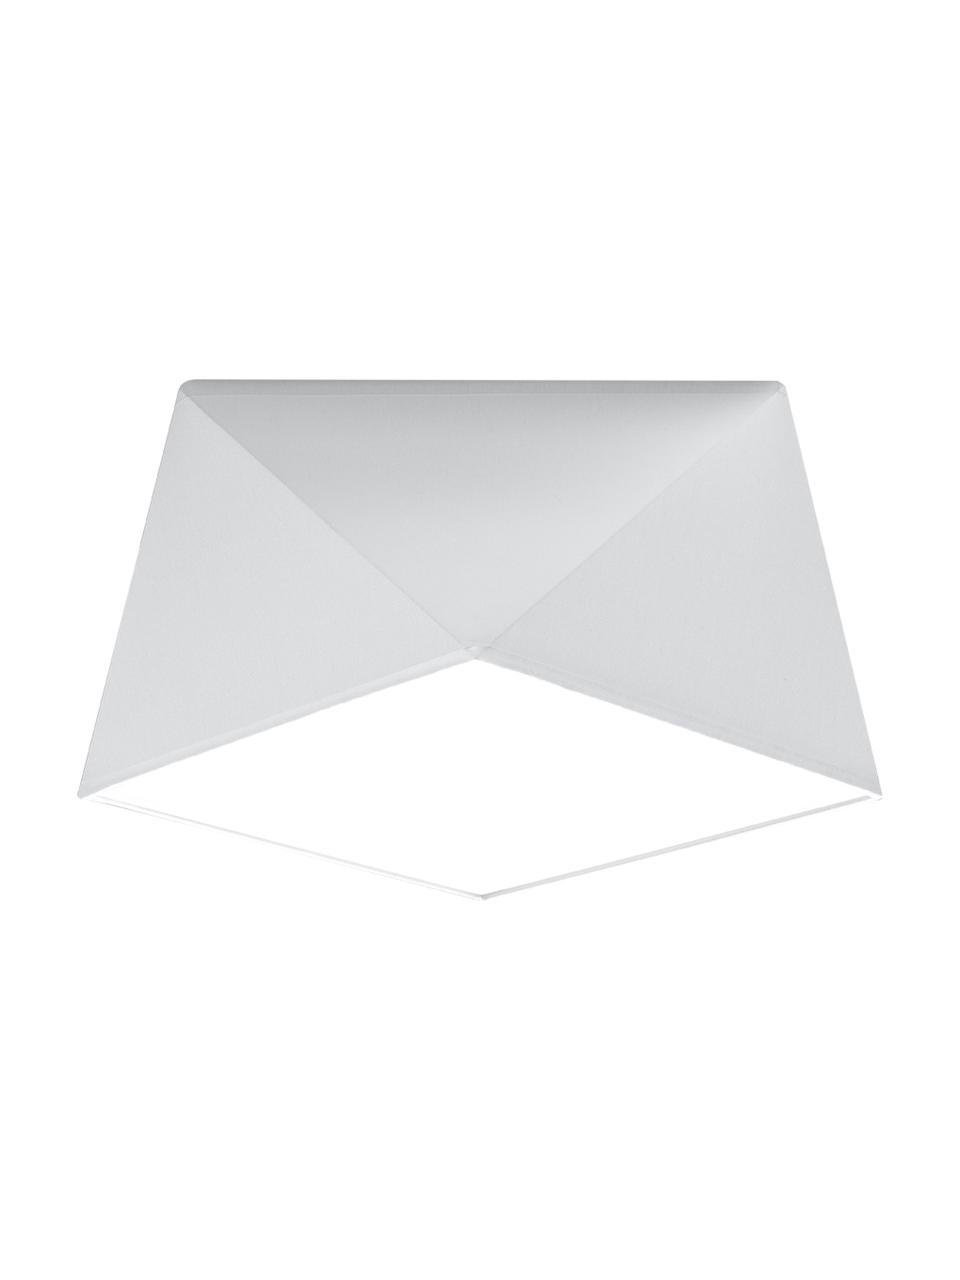 Lampa sufitowa Clarity, Tworzywo sztuczne (PVC), Biały, Ø 30 x W 15 cm